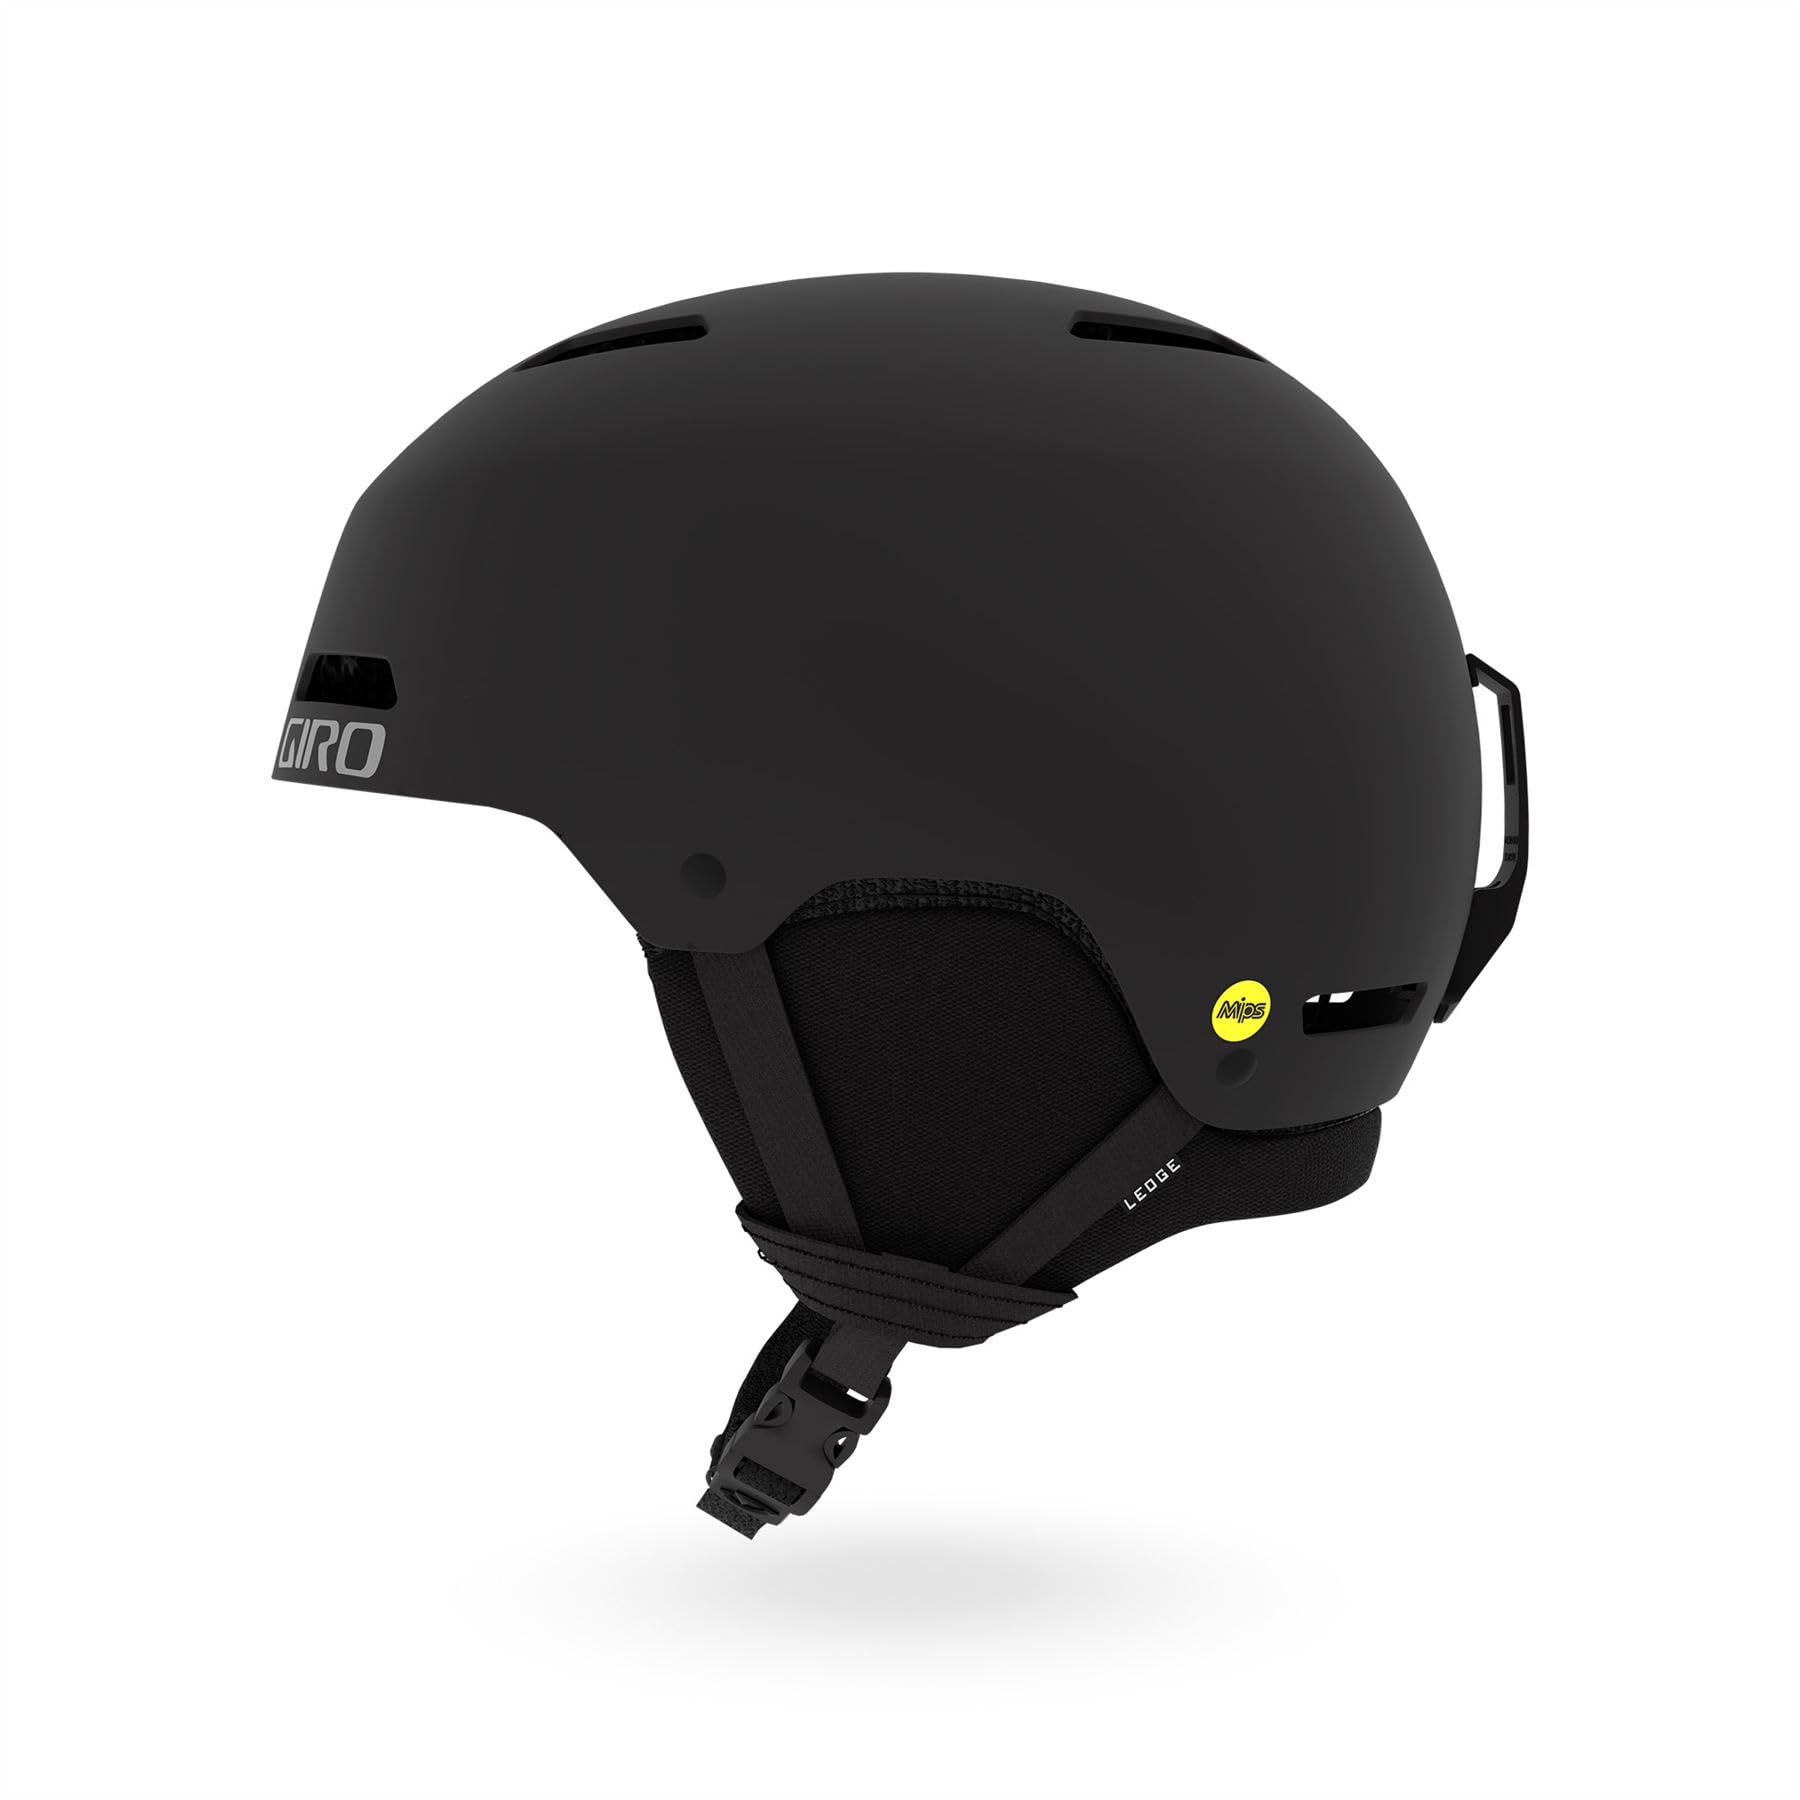 Giro Ledge MIPS Ski Helmet - Snowboard Helmet for Men Women Youth - Matte Black - Size M 55.5-59 cm並行輸入品